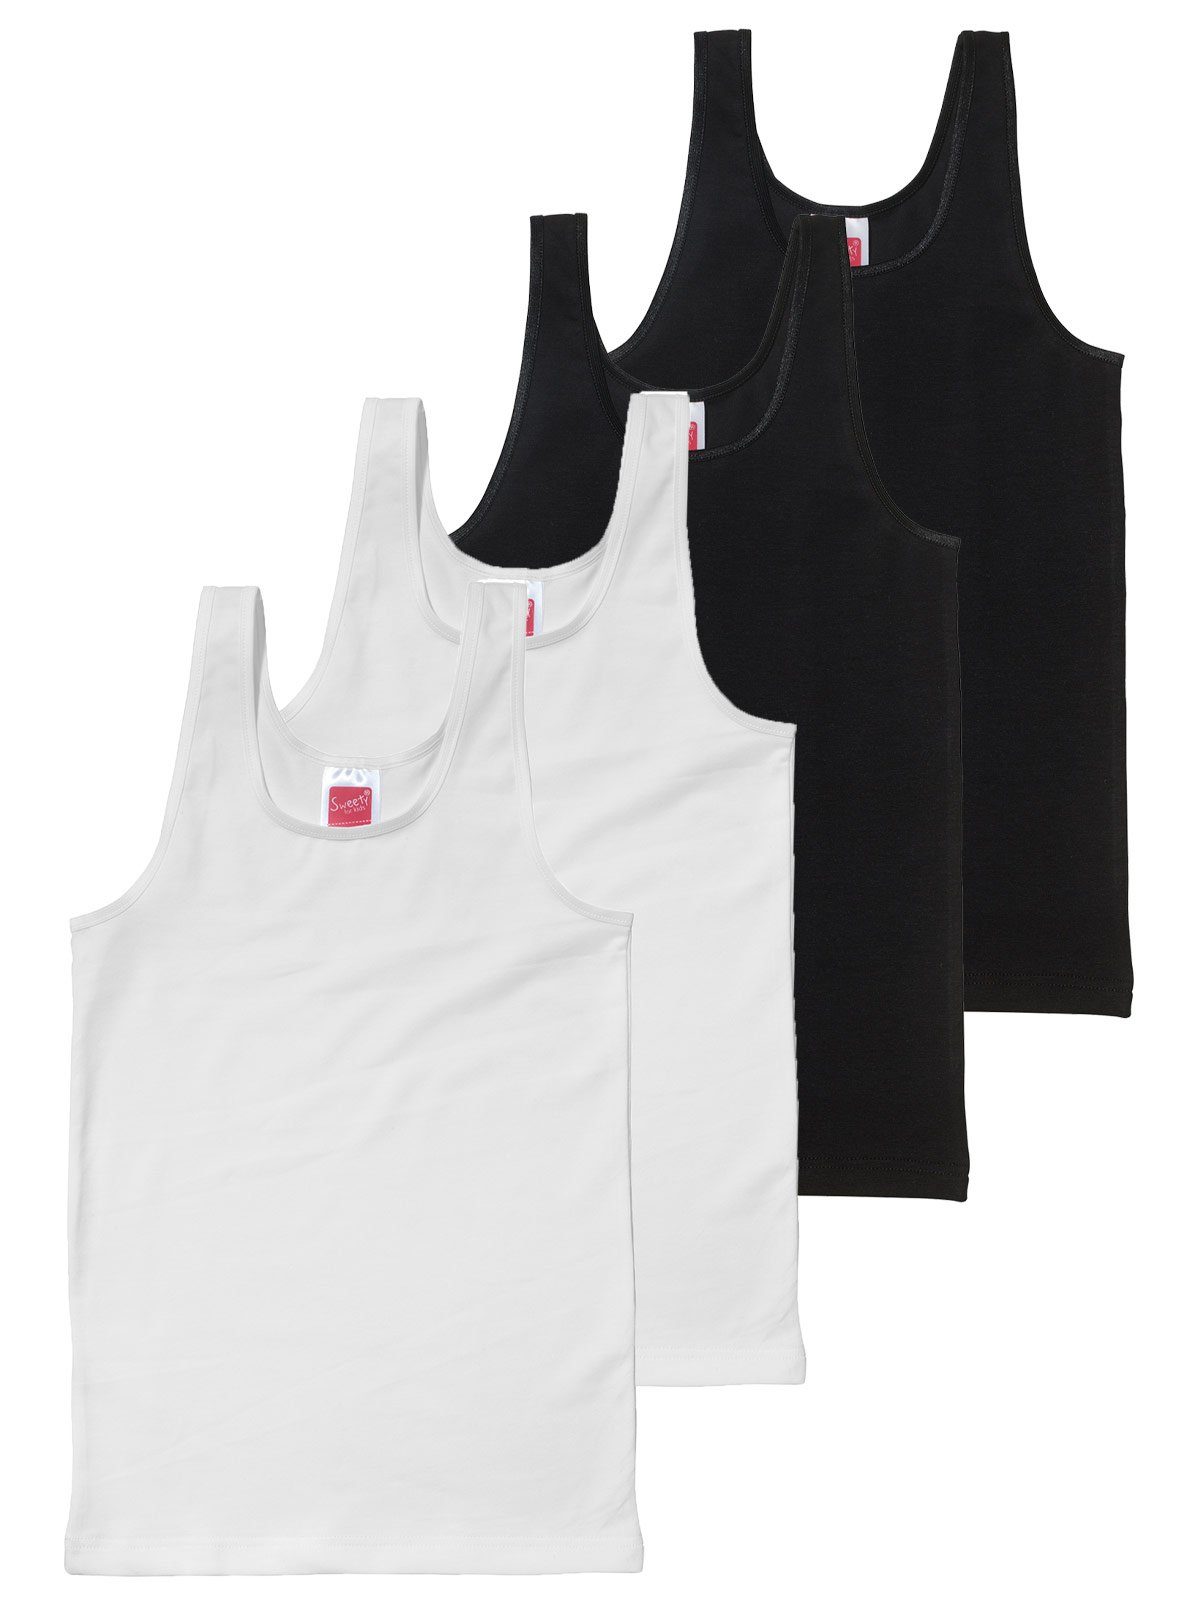 Sweety for Kids Unterhemd 4er Sparpack Mädchen Achselhemd Single Jersey (Spar-Set, 4-St) hohe Markenqualität weiss schwarz